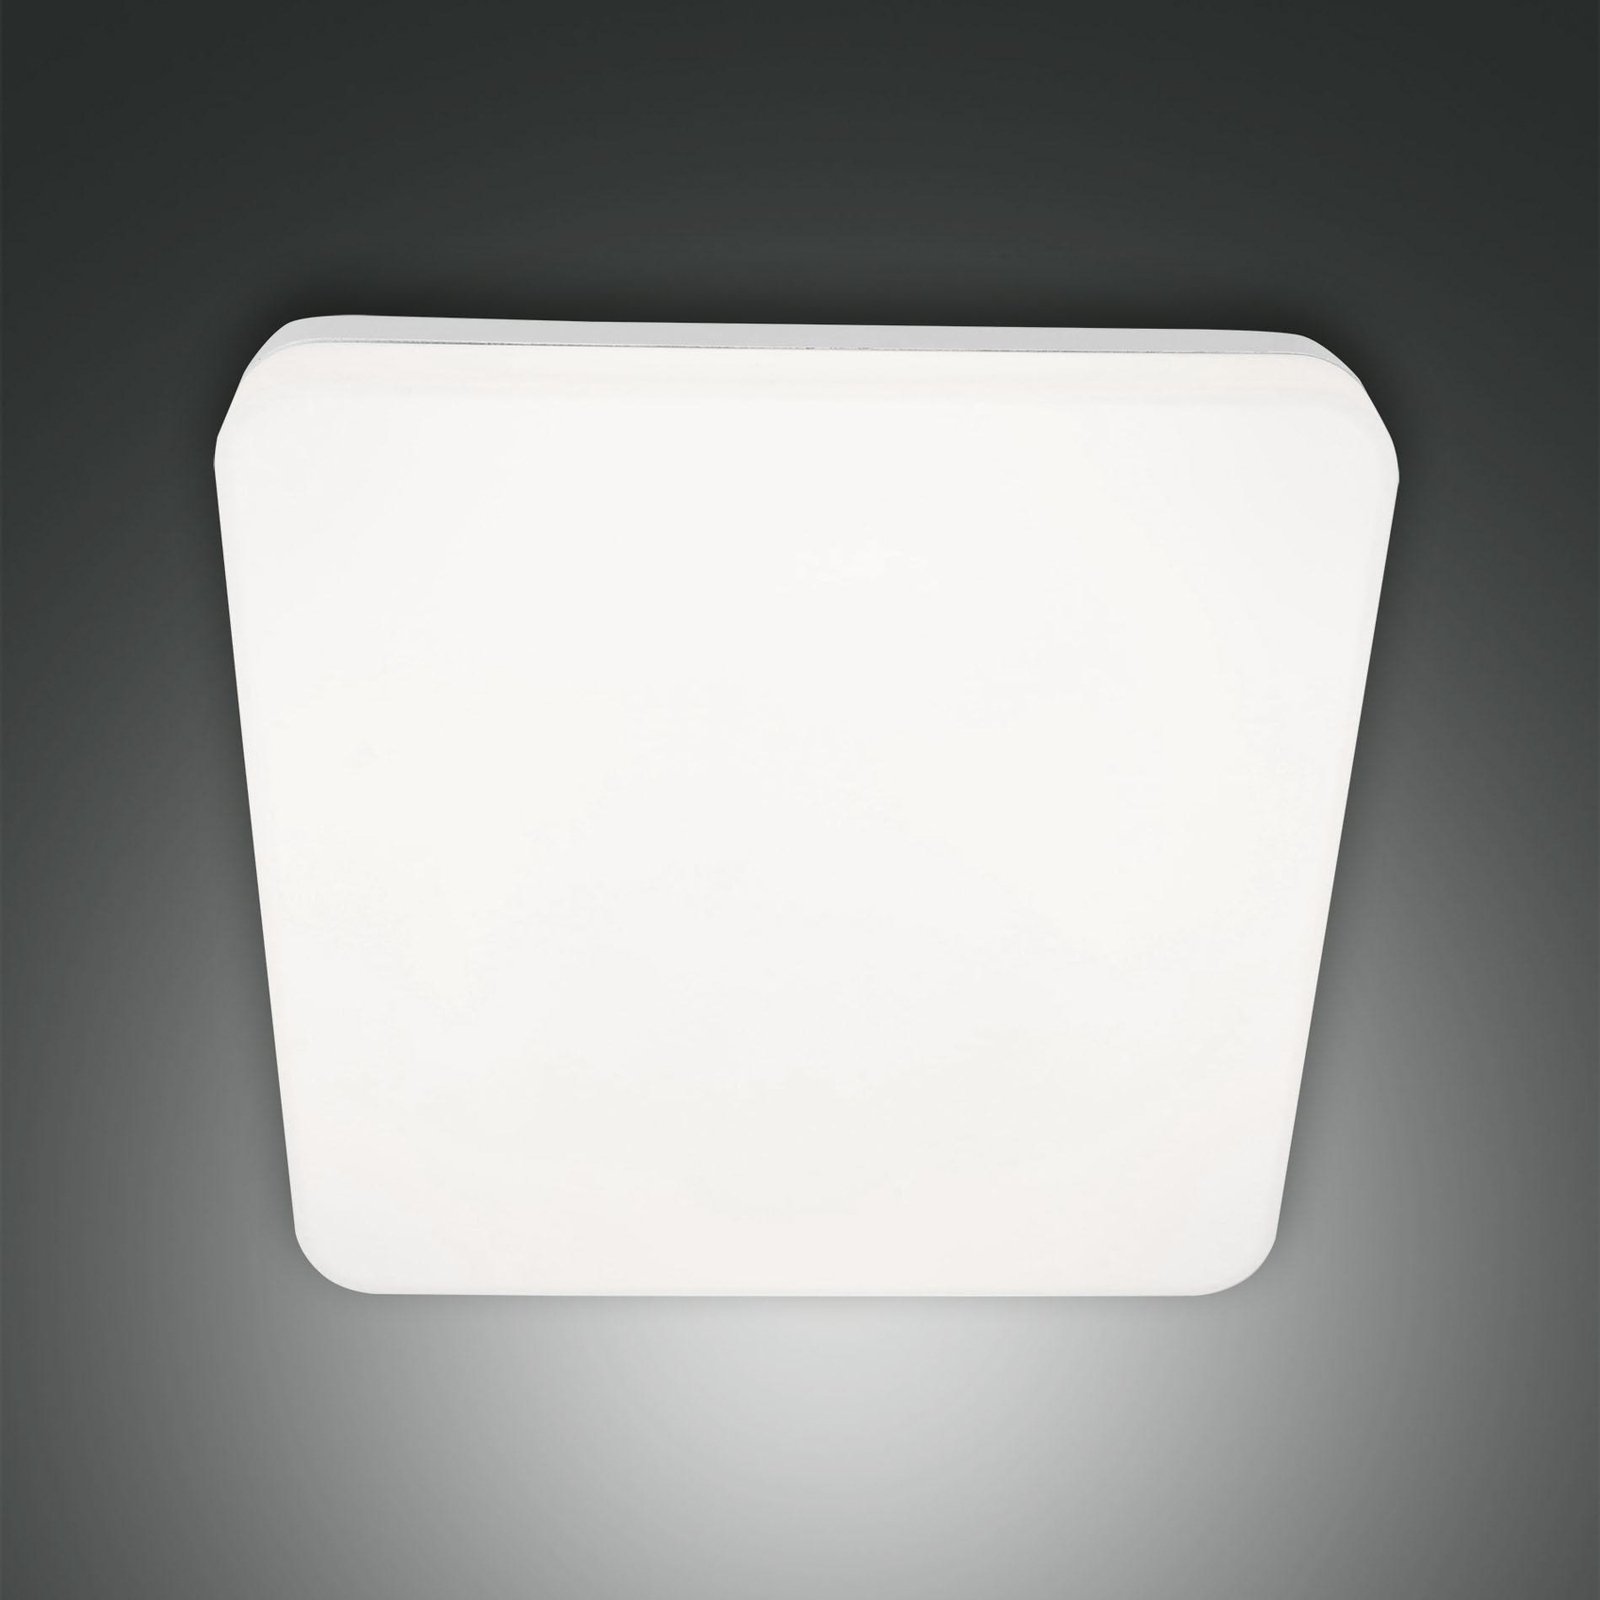 Folk LED outdoor ceiling light, 28 cm x 28 cm, white, IP65